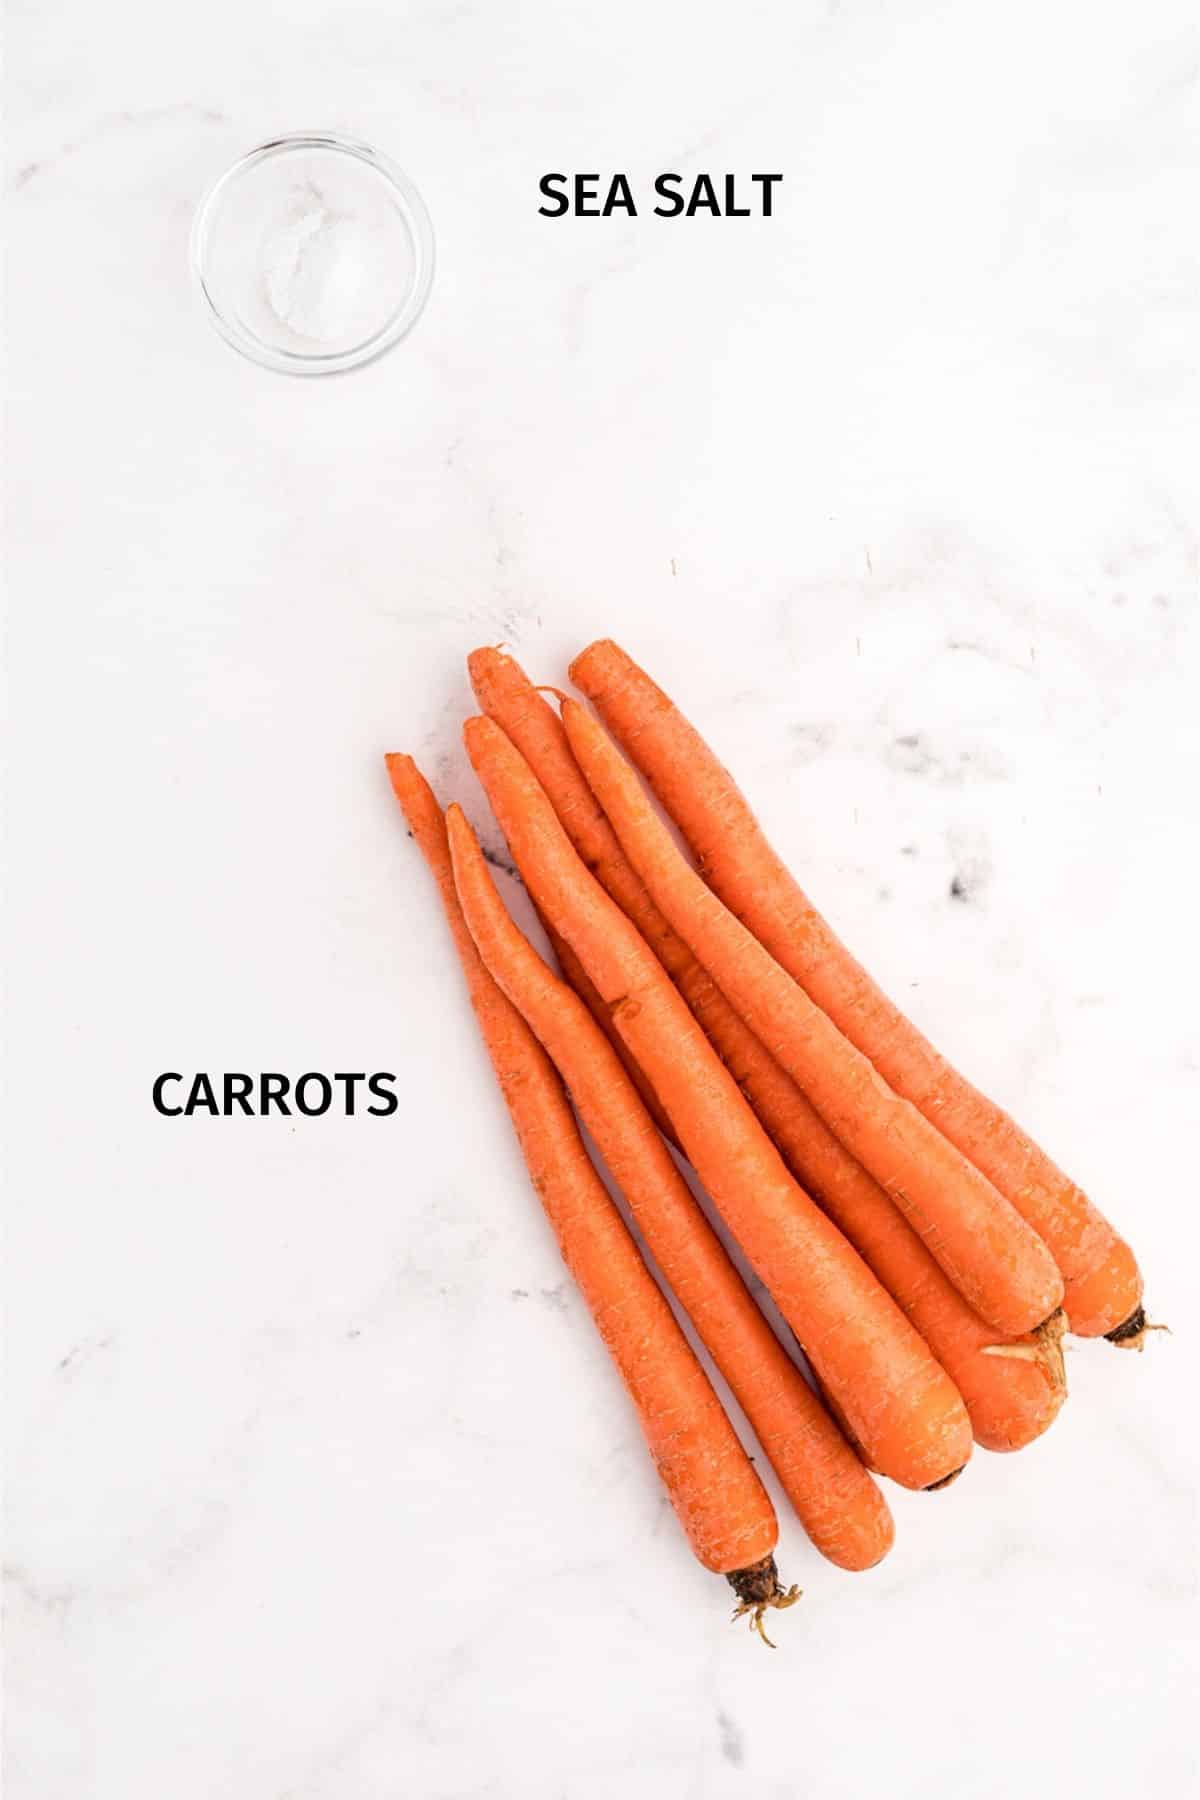 Ingredients for frozen carrots